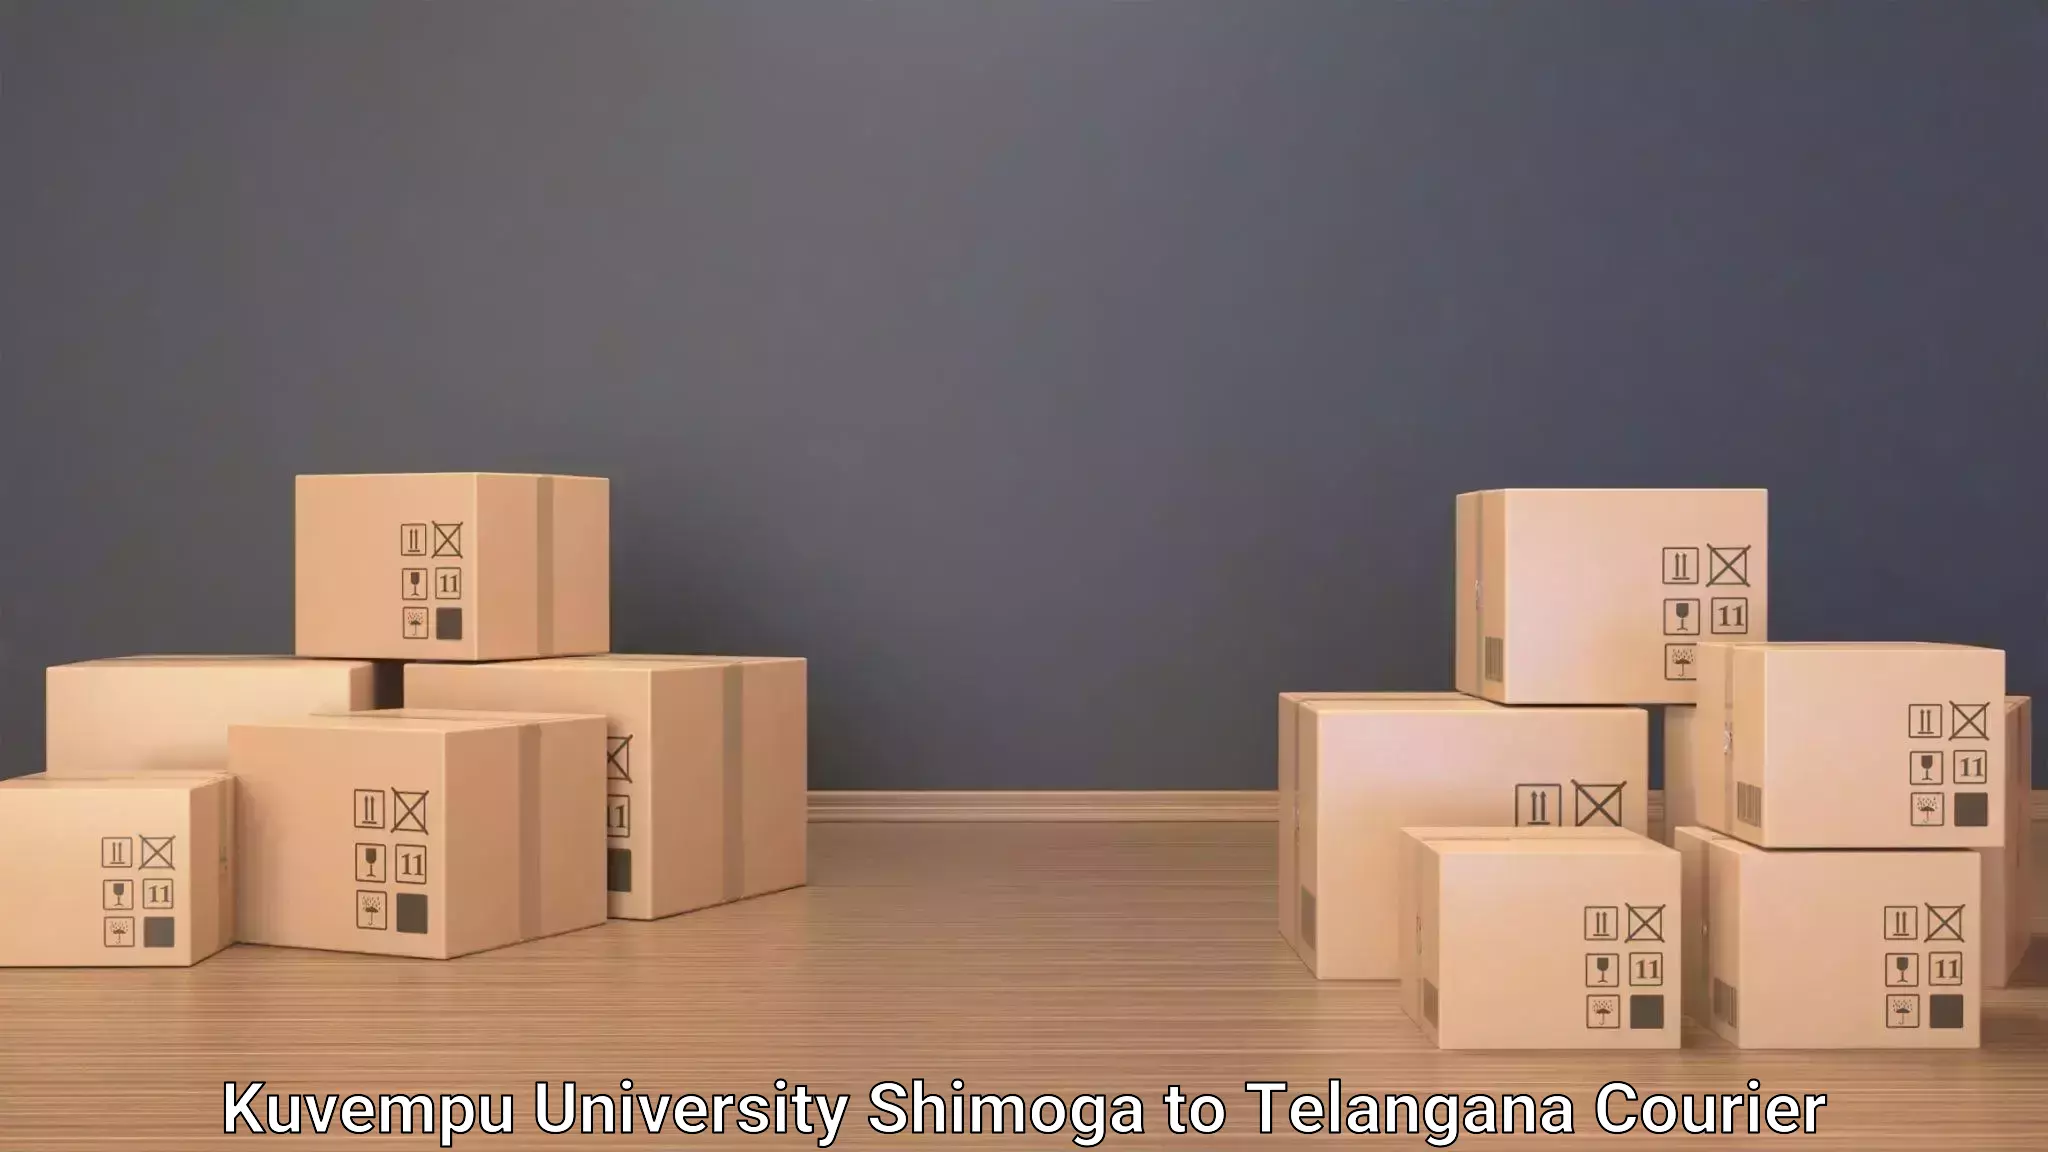 Baggage transport scheduler Kuvempu University Shimoga to Telangana